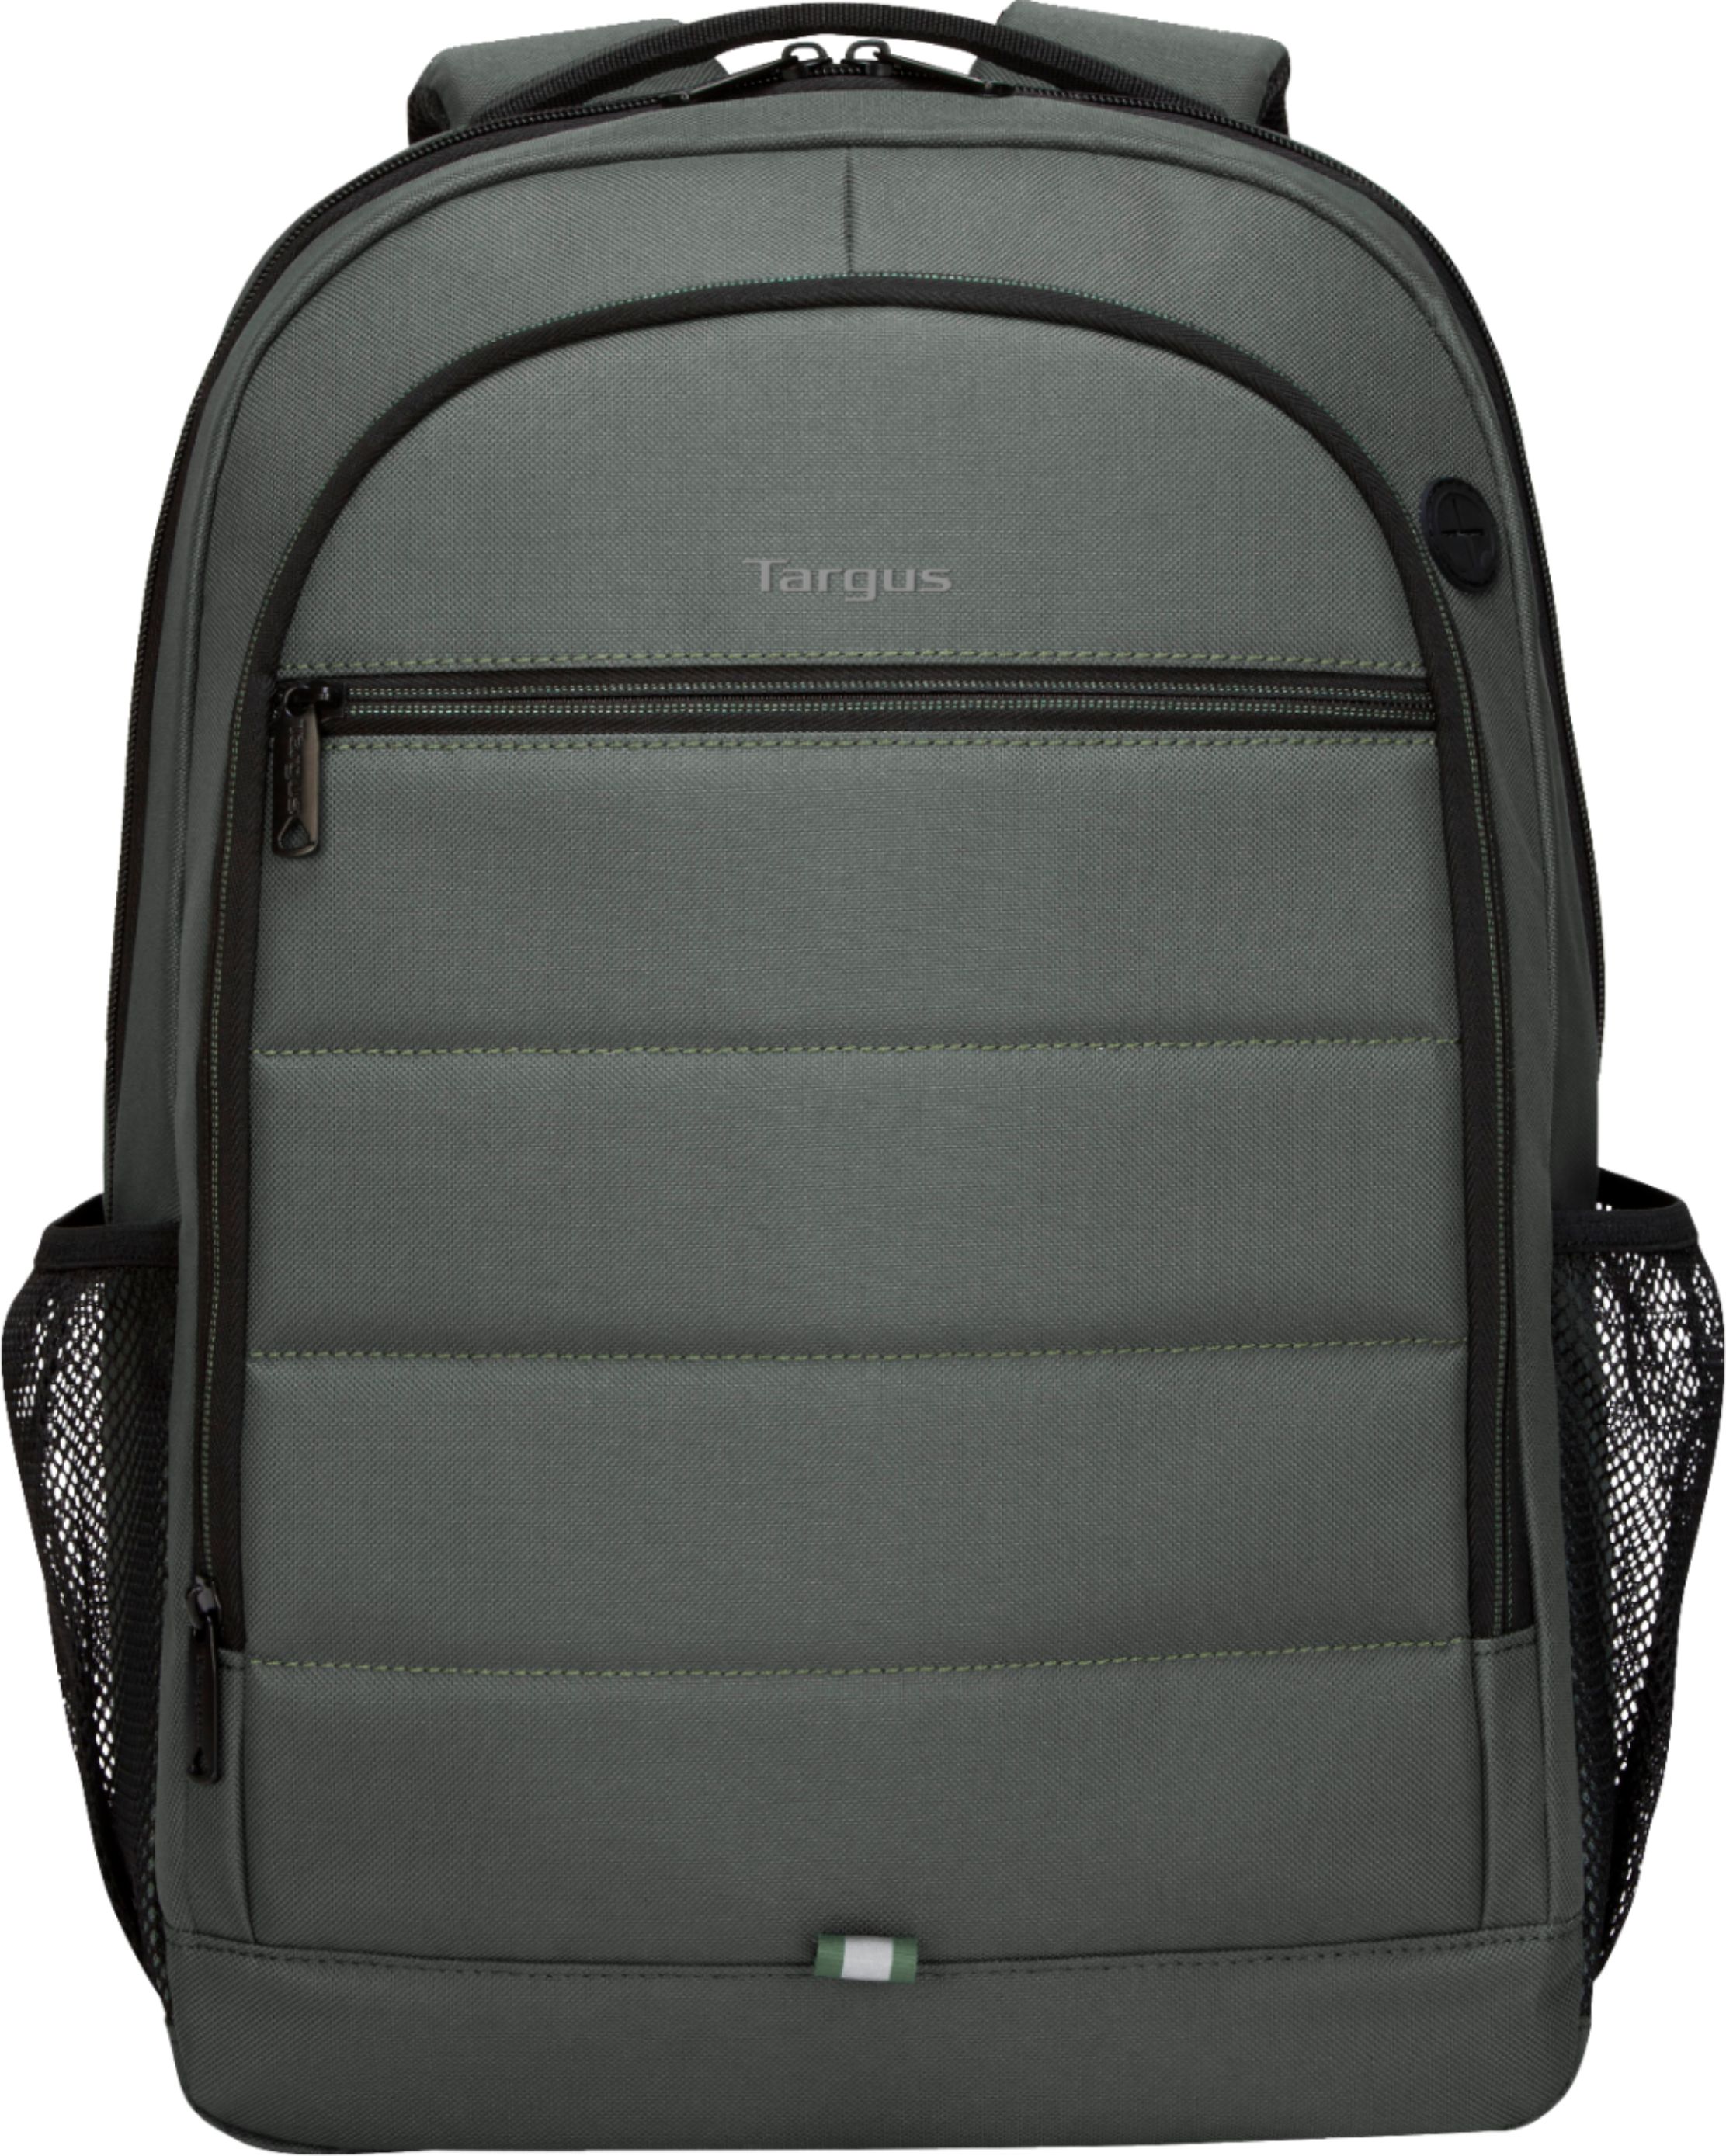 Targus - 15.6” Octave Backpack - Olive